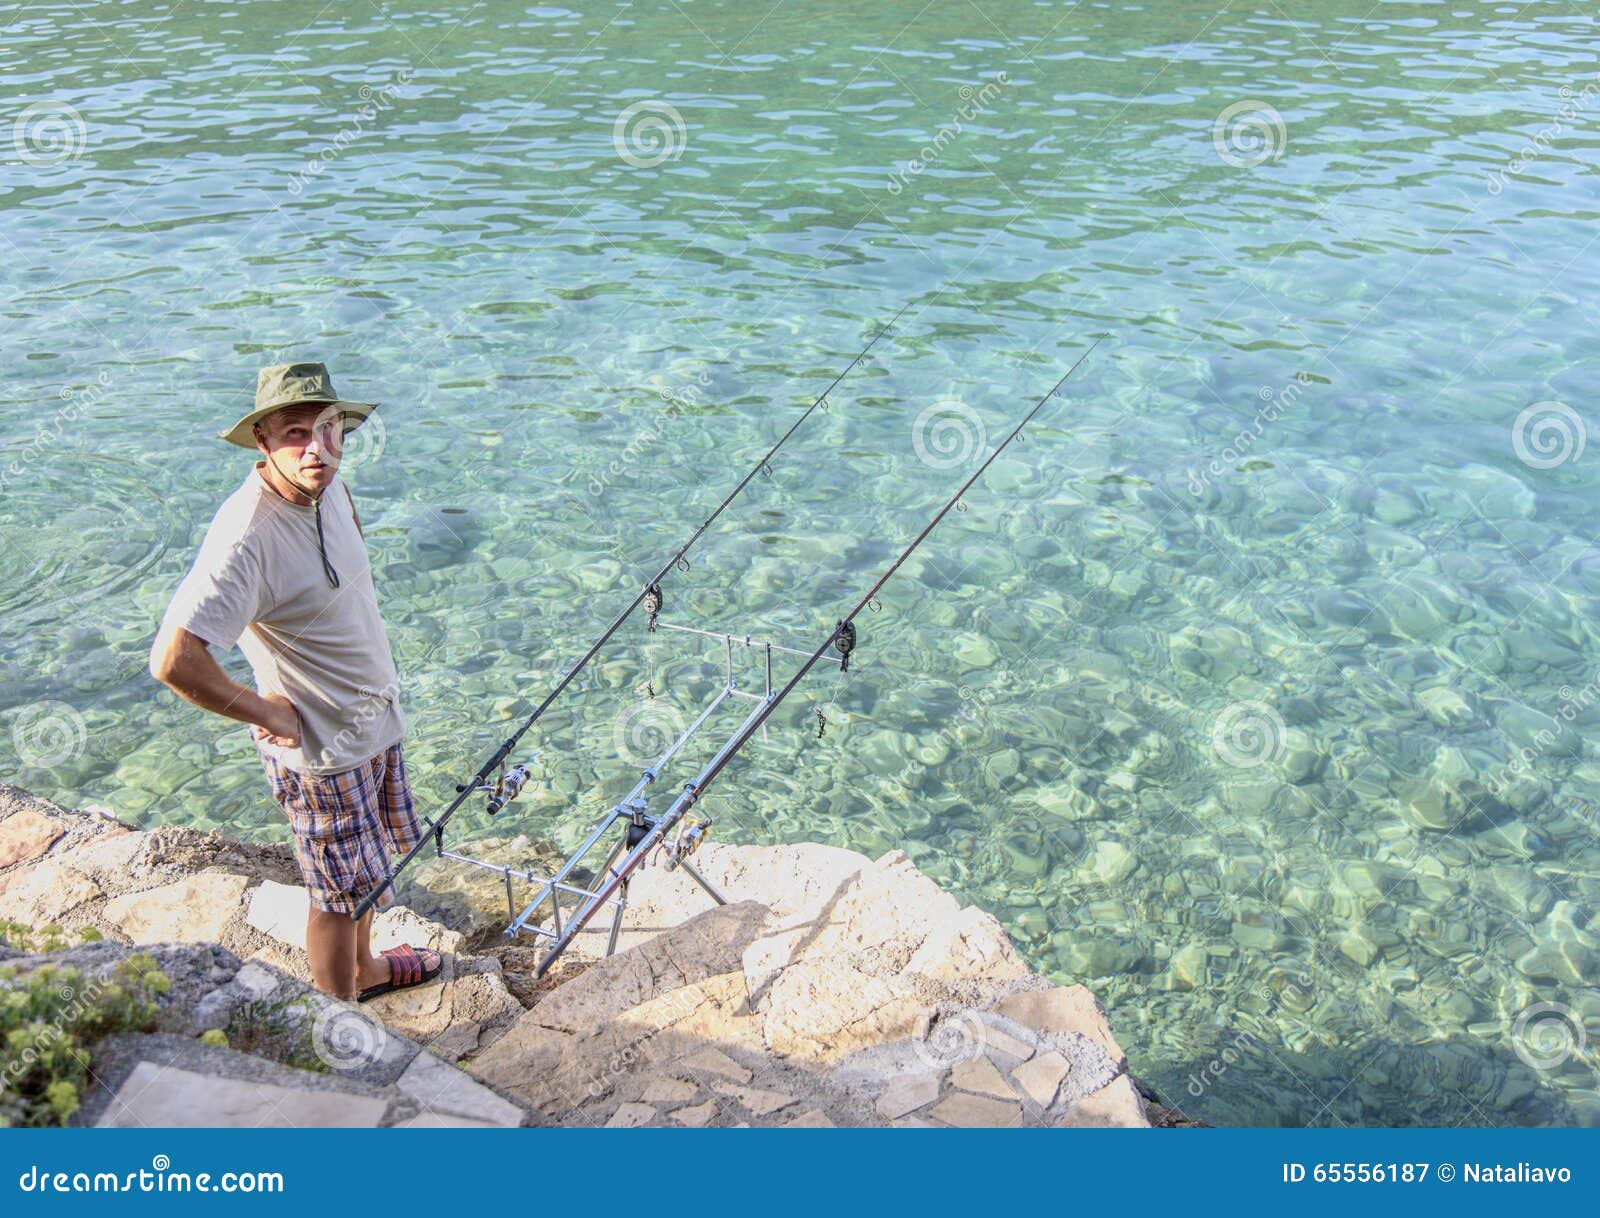 3,177 Man Bank Fishing Stock Photos - Free & Royalty-Free Stock